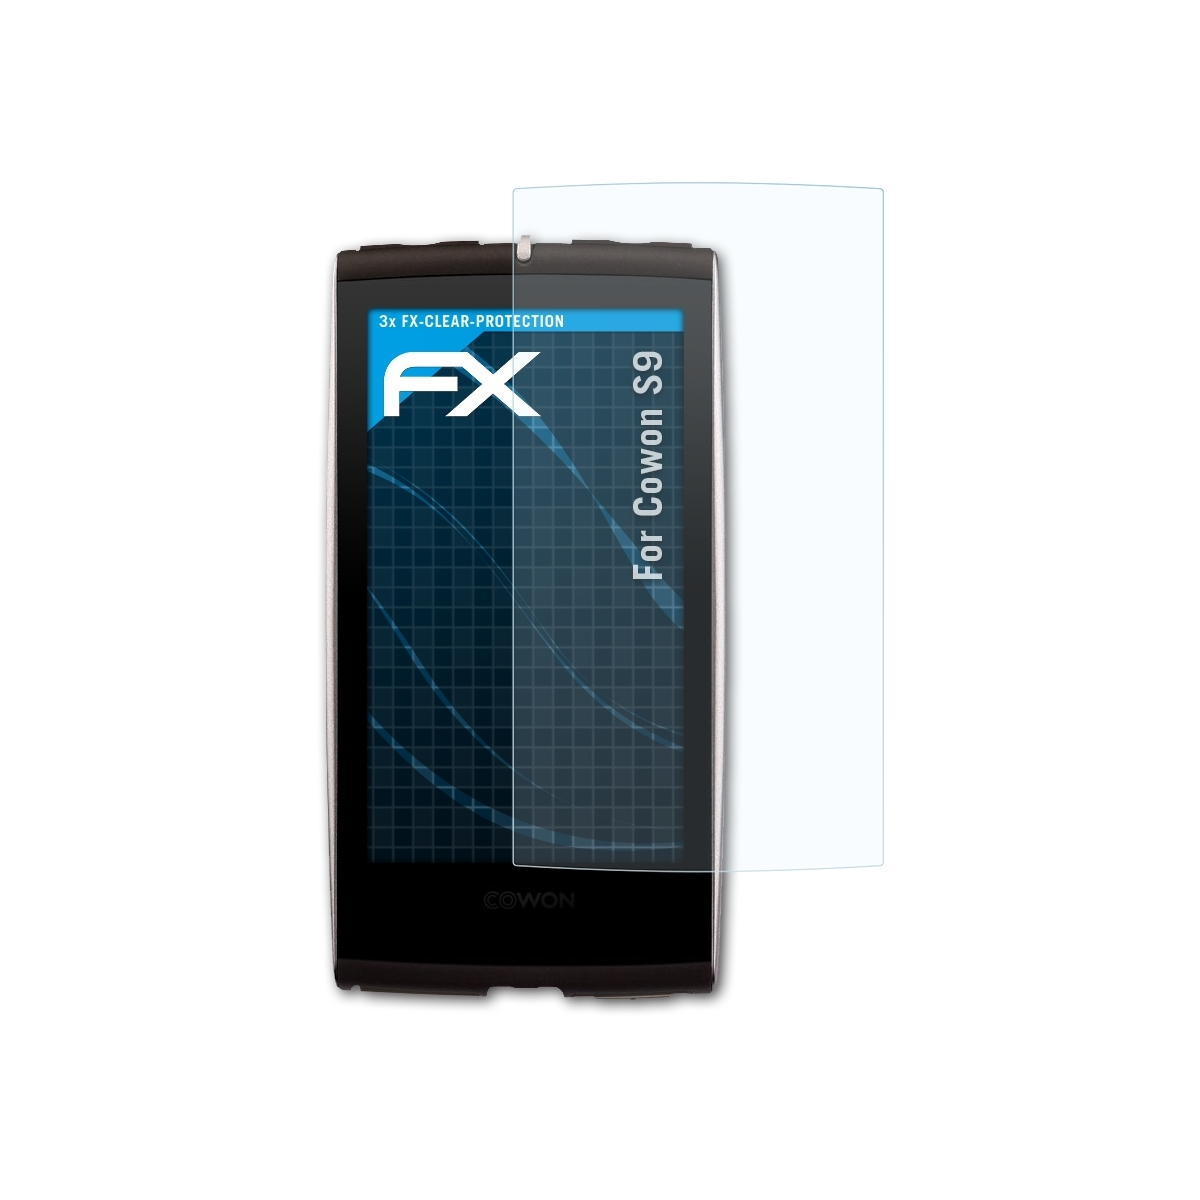 ATFOLIX 3x Cowon S9) Displayschutz(für FX-Clear